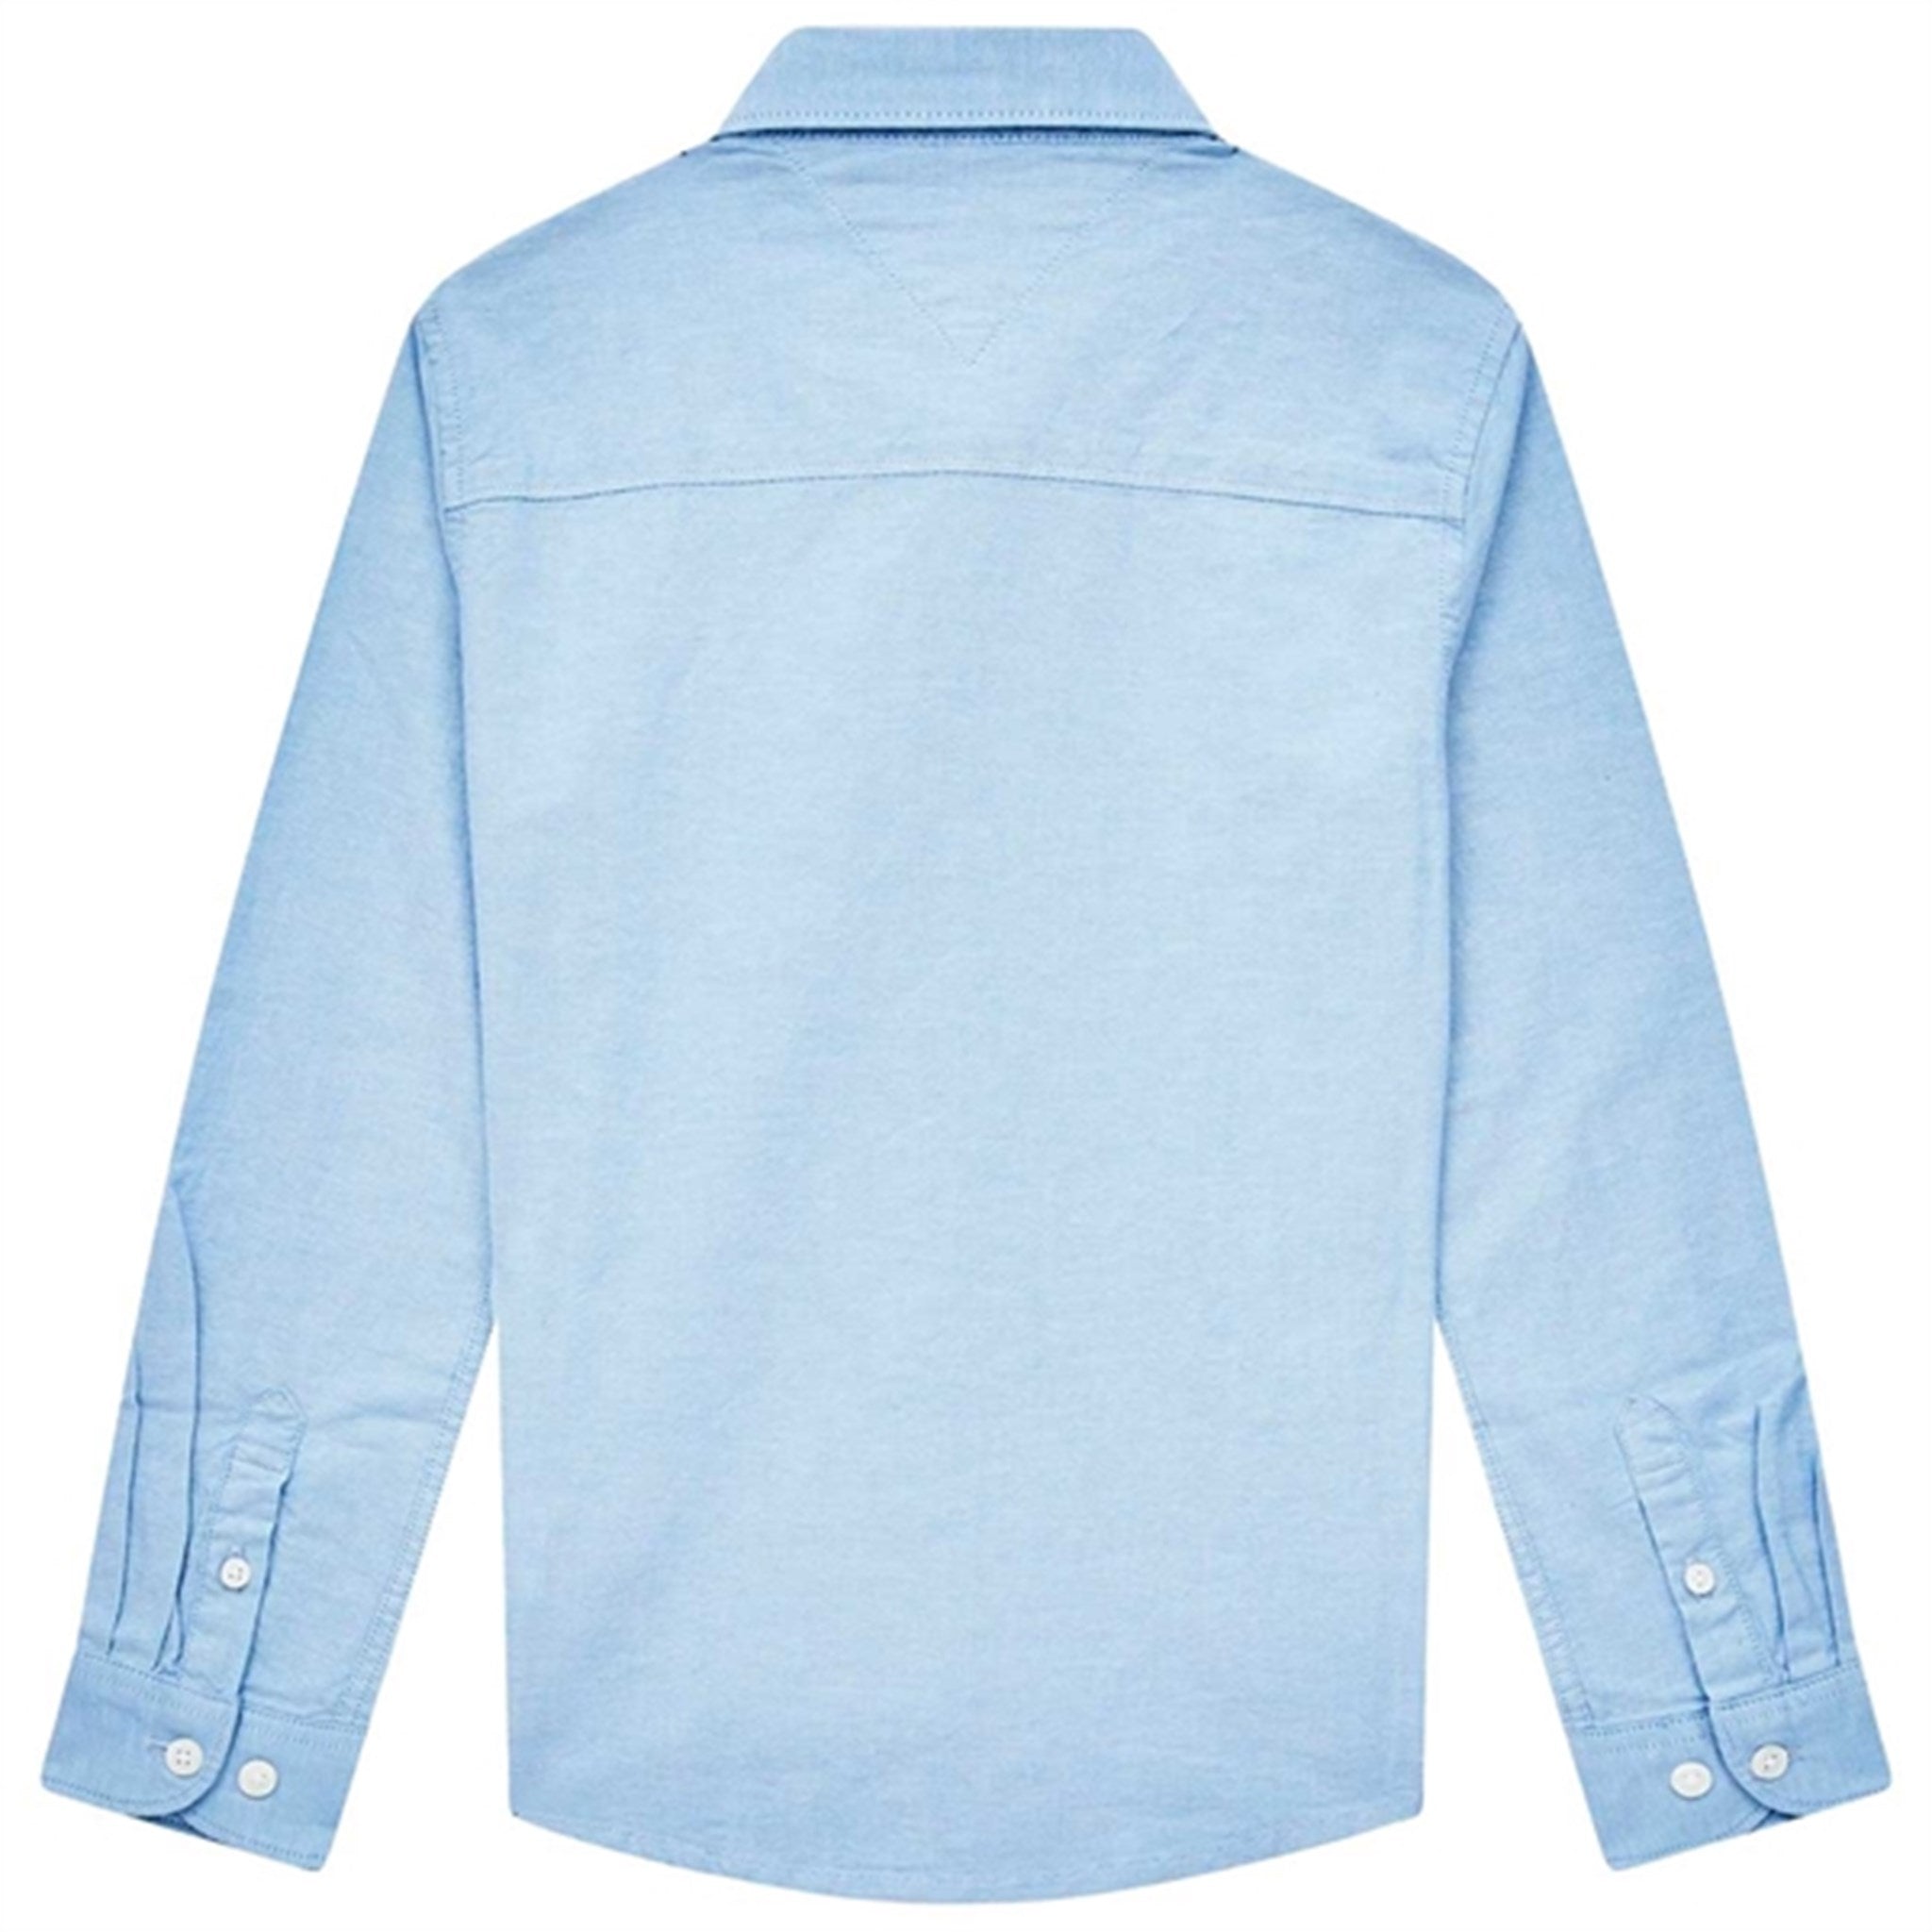 Tommy Hilfiger Boys Stretch Oxford Shirt Calm Blue 2